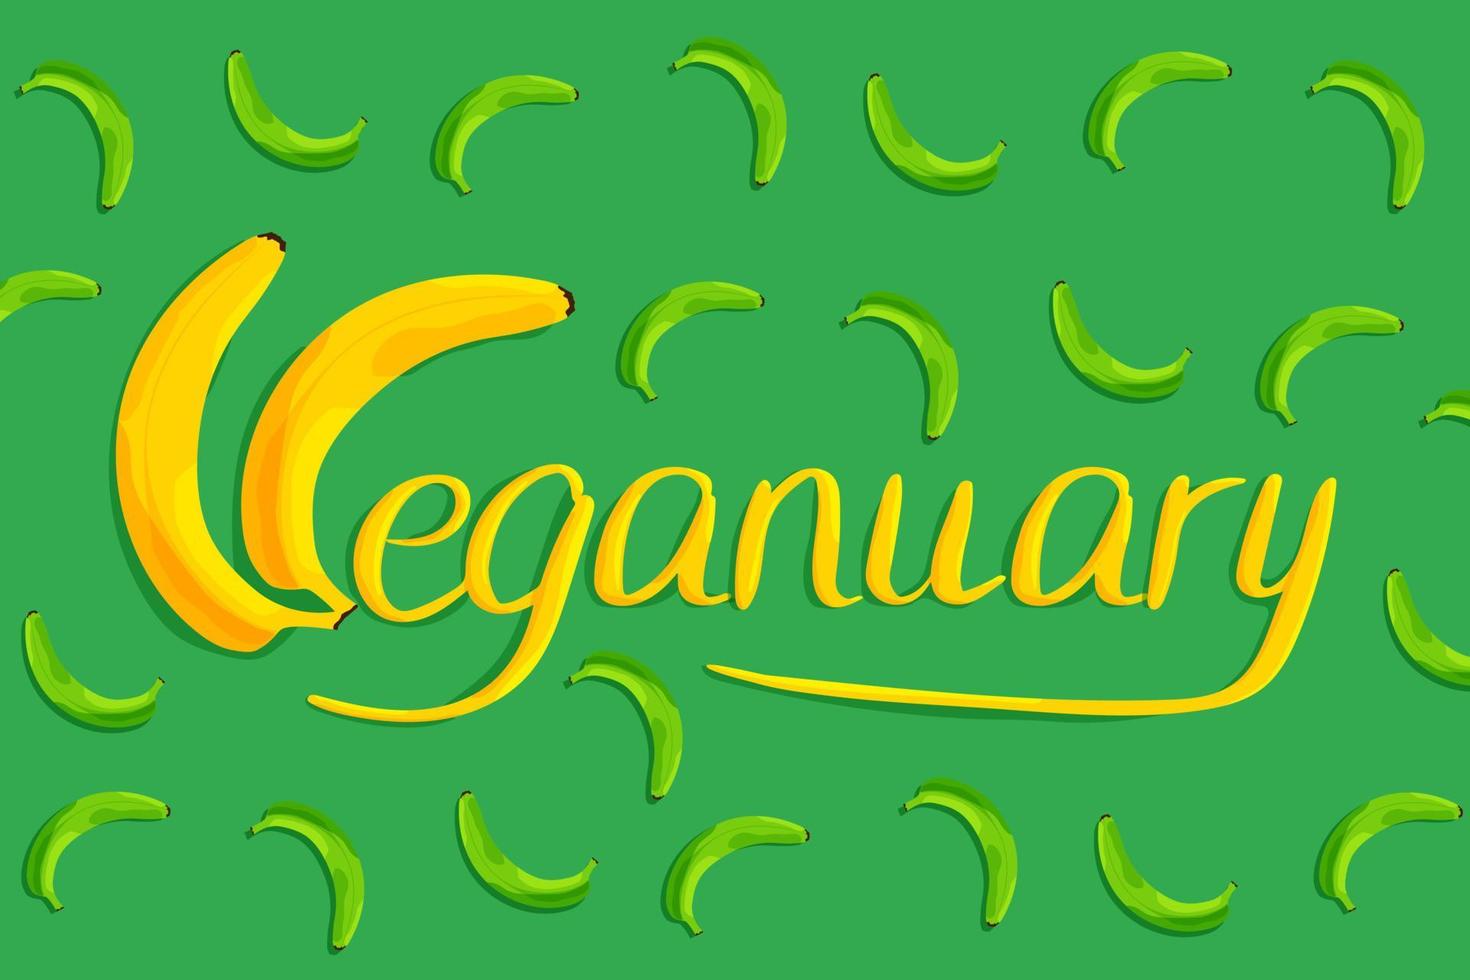 veganär hand dragen text på en grön bakgrund tillverkad av bananer. vektor illustration i platt stil